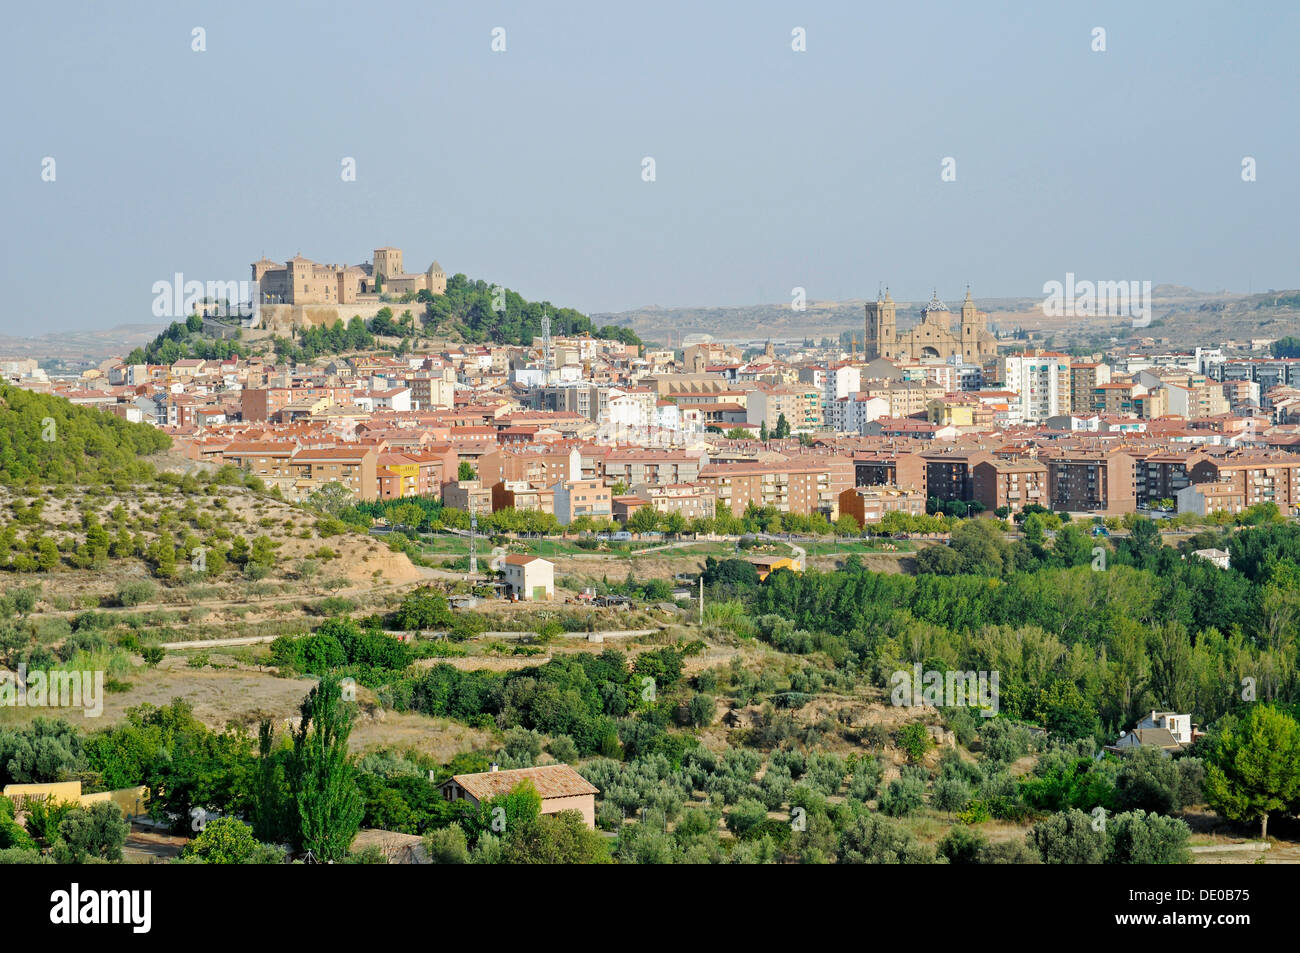 Vue de la ville avec le château, l'hôtel Parador, Hotel, Castillo de los Calatravos, Alcaniz, Aragon, Espagne, Europe Banque D'Images